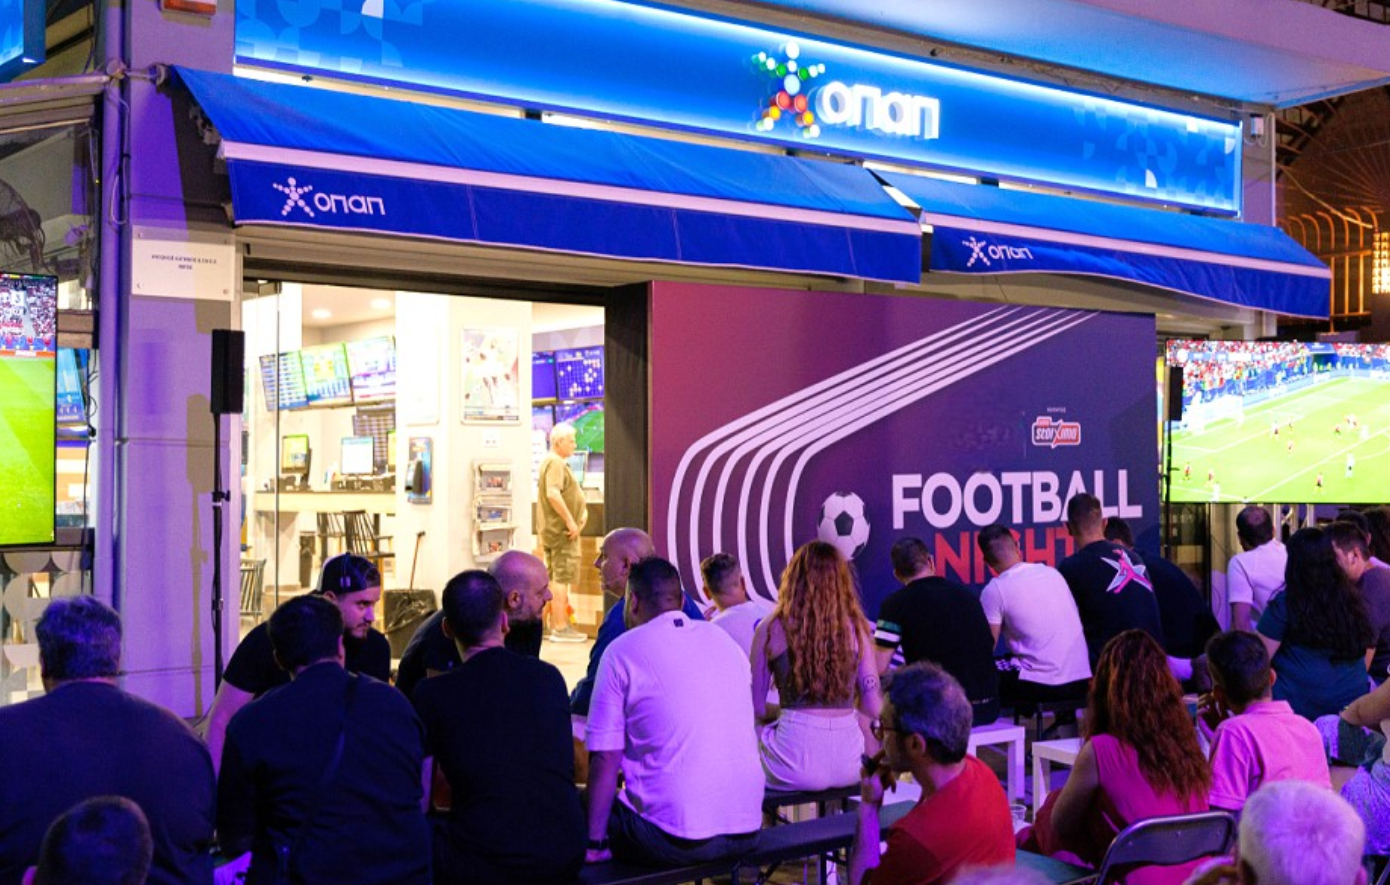 Ποδοσφαιρική βραδιά με Αυστρία-Τουρκία σε κατάστημα ΟΠΑΠ στην Αθήνα